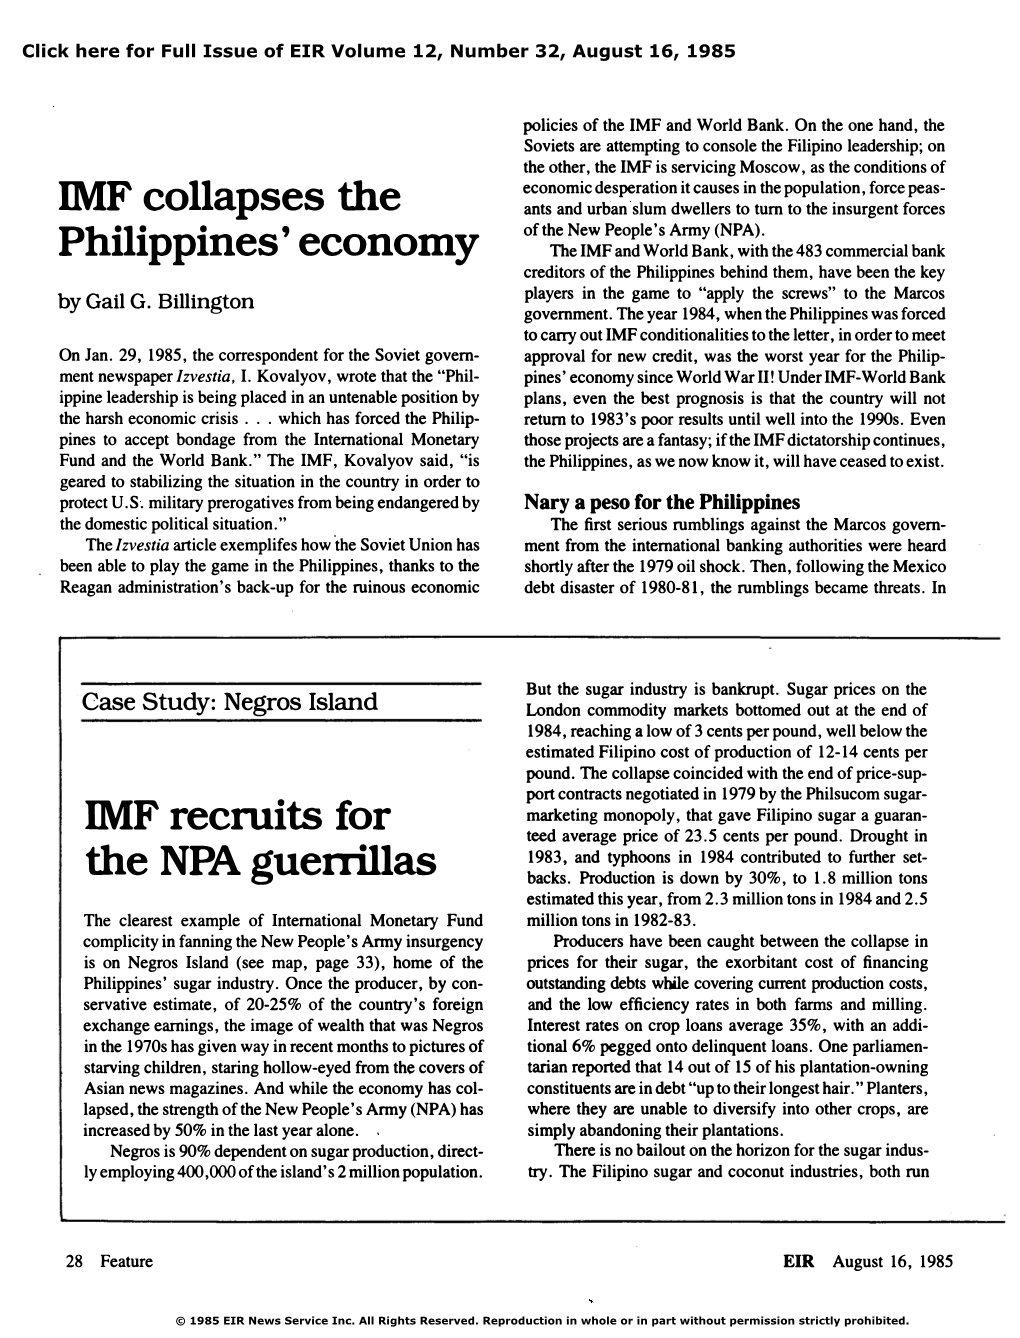 IMF Collapses the Philippines' Economy